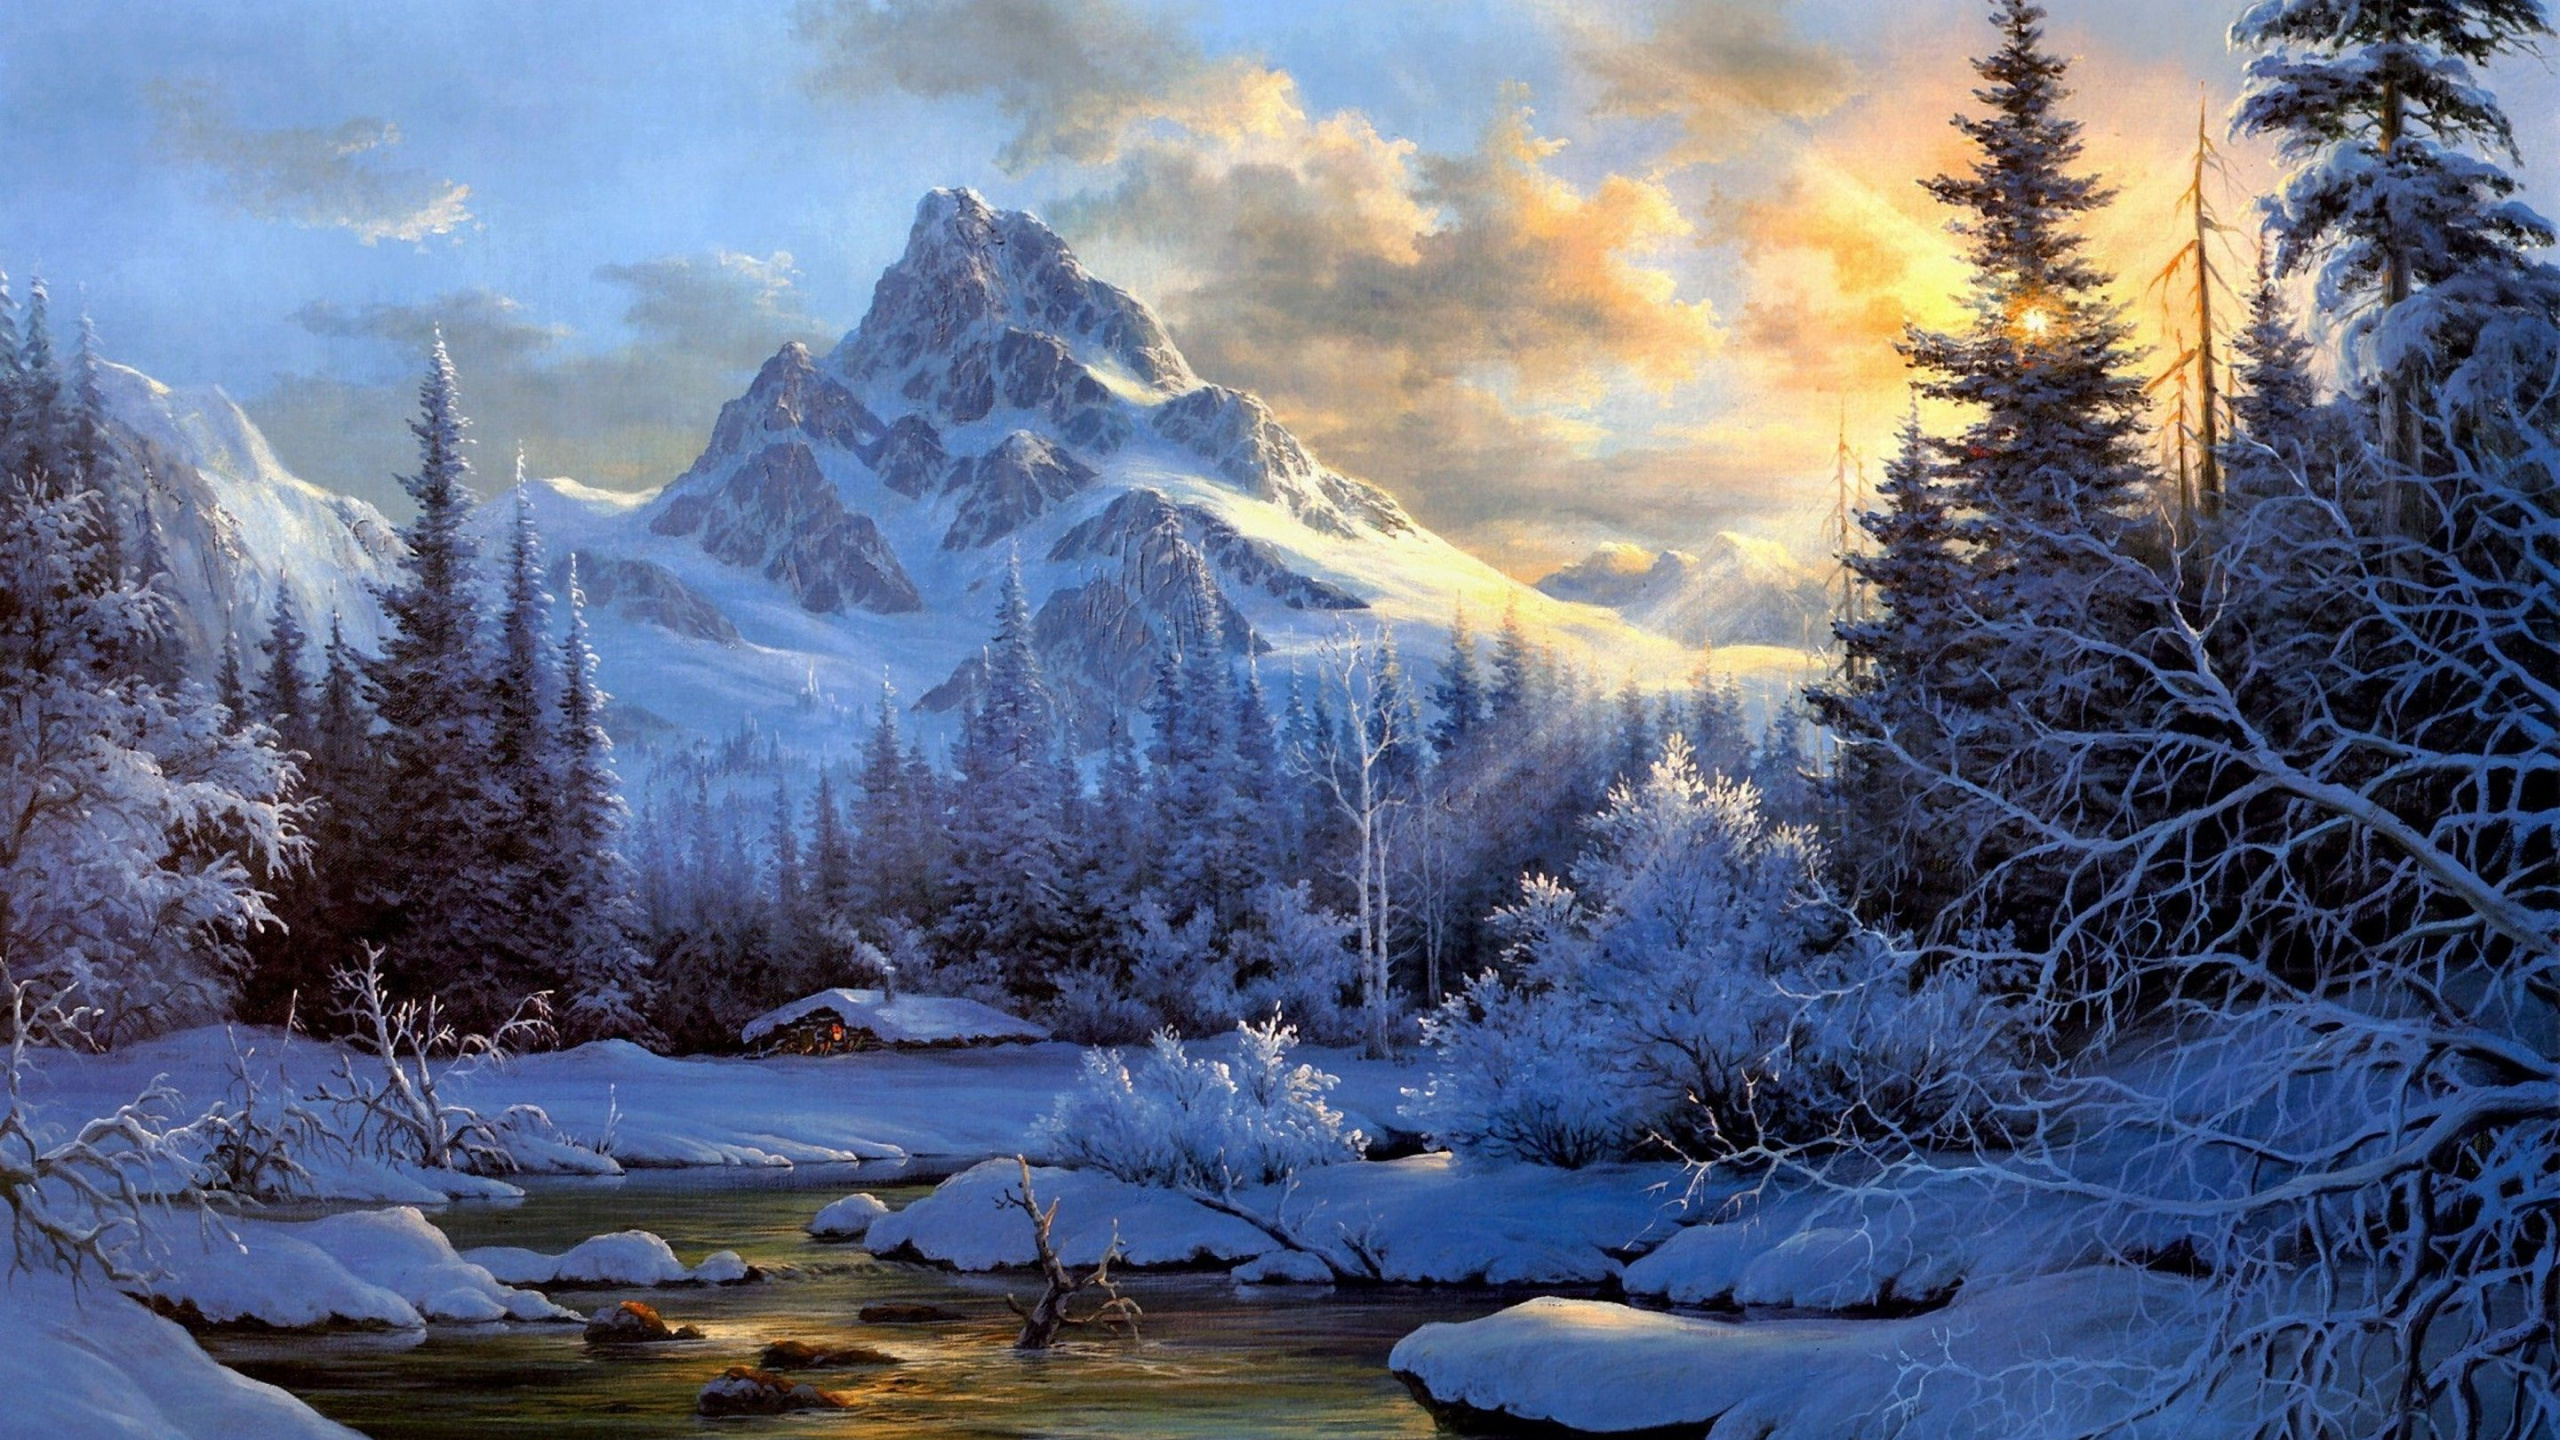 风景画, 艺术, 性质, 冬天, 荒野 壁纸 2560x1440 允许